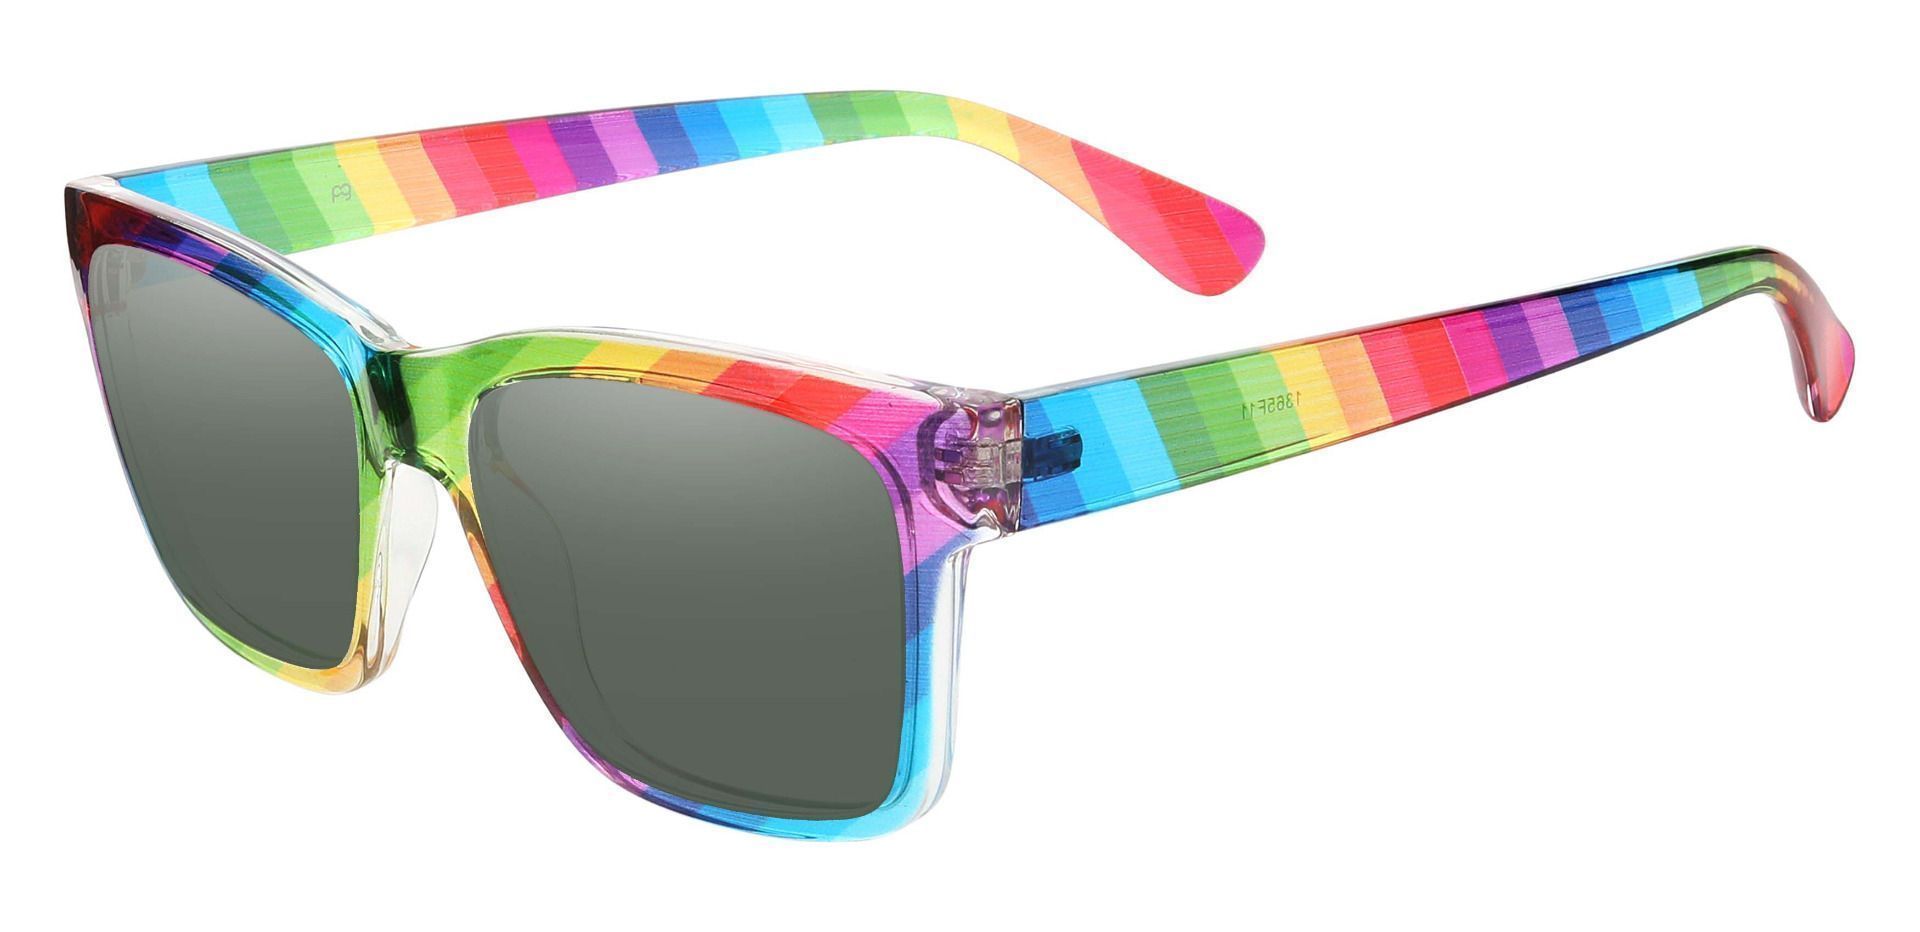 Hatton Square Prescription Sunglasses - Multi Color Frame With Green Lenses